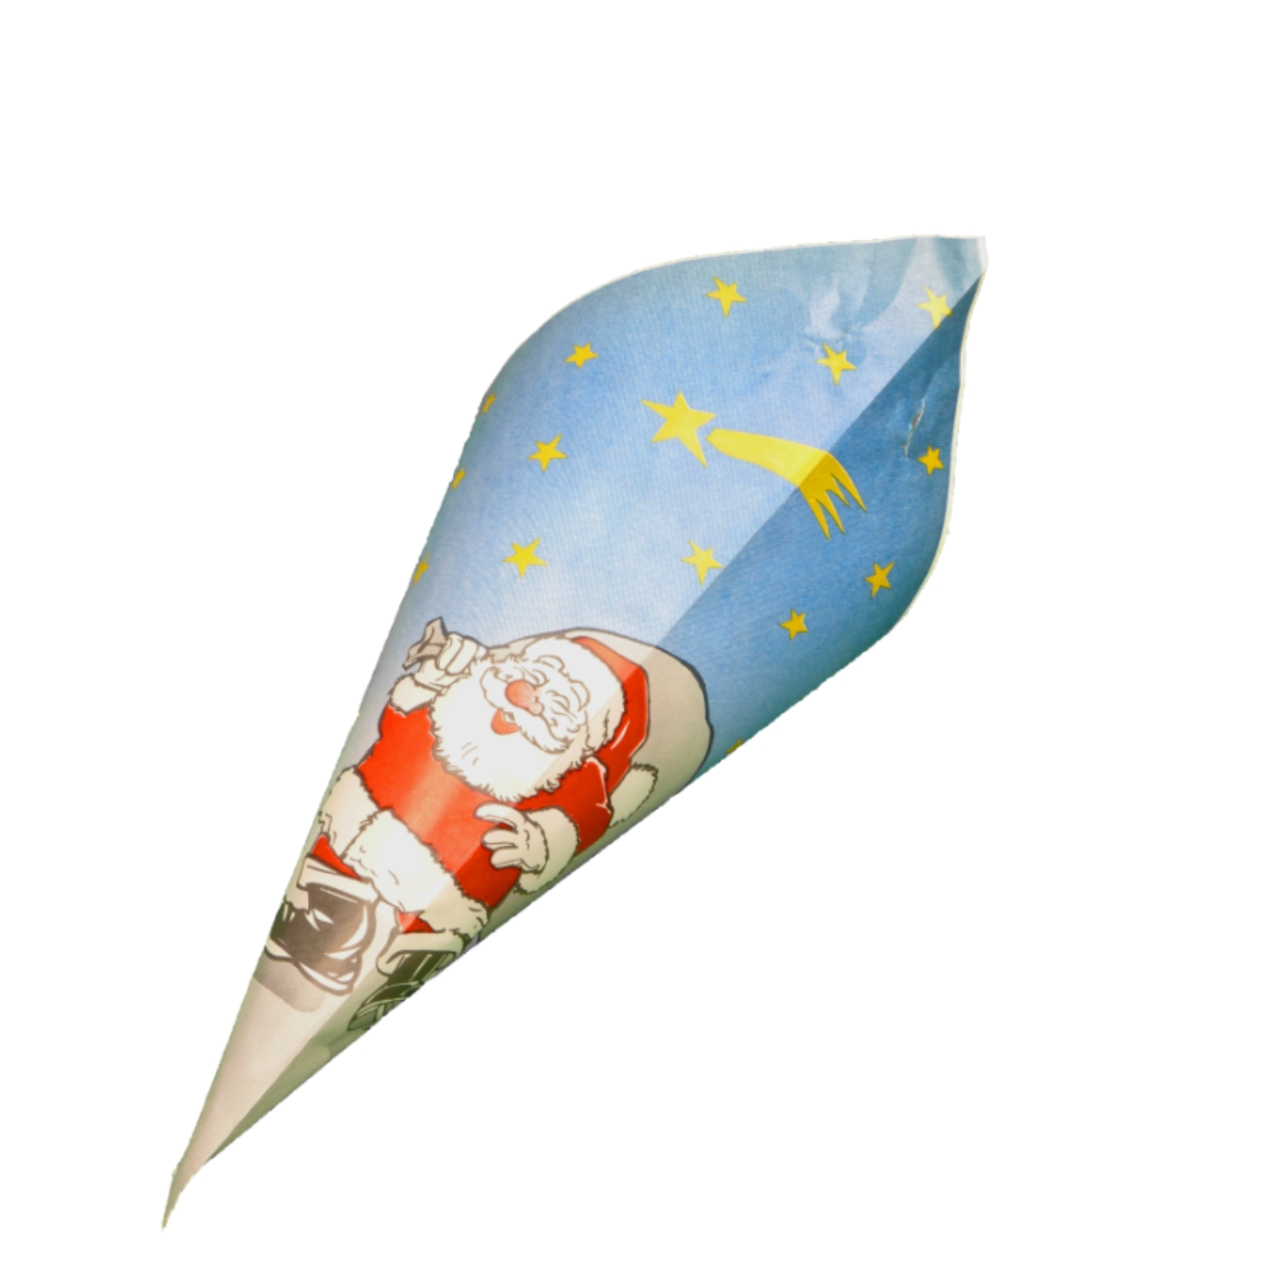 Spitztüten 19 cm, Weihnachtsmann, aus Papier